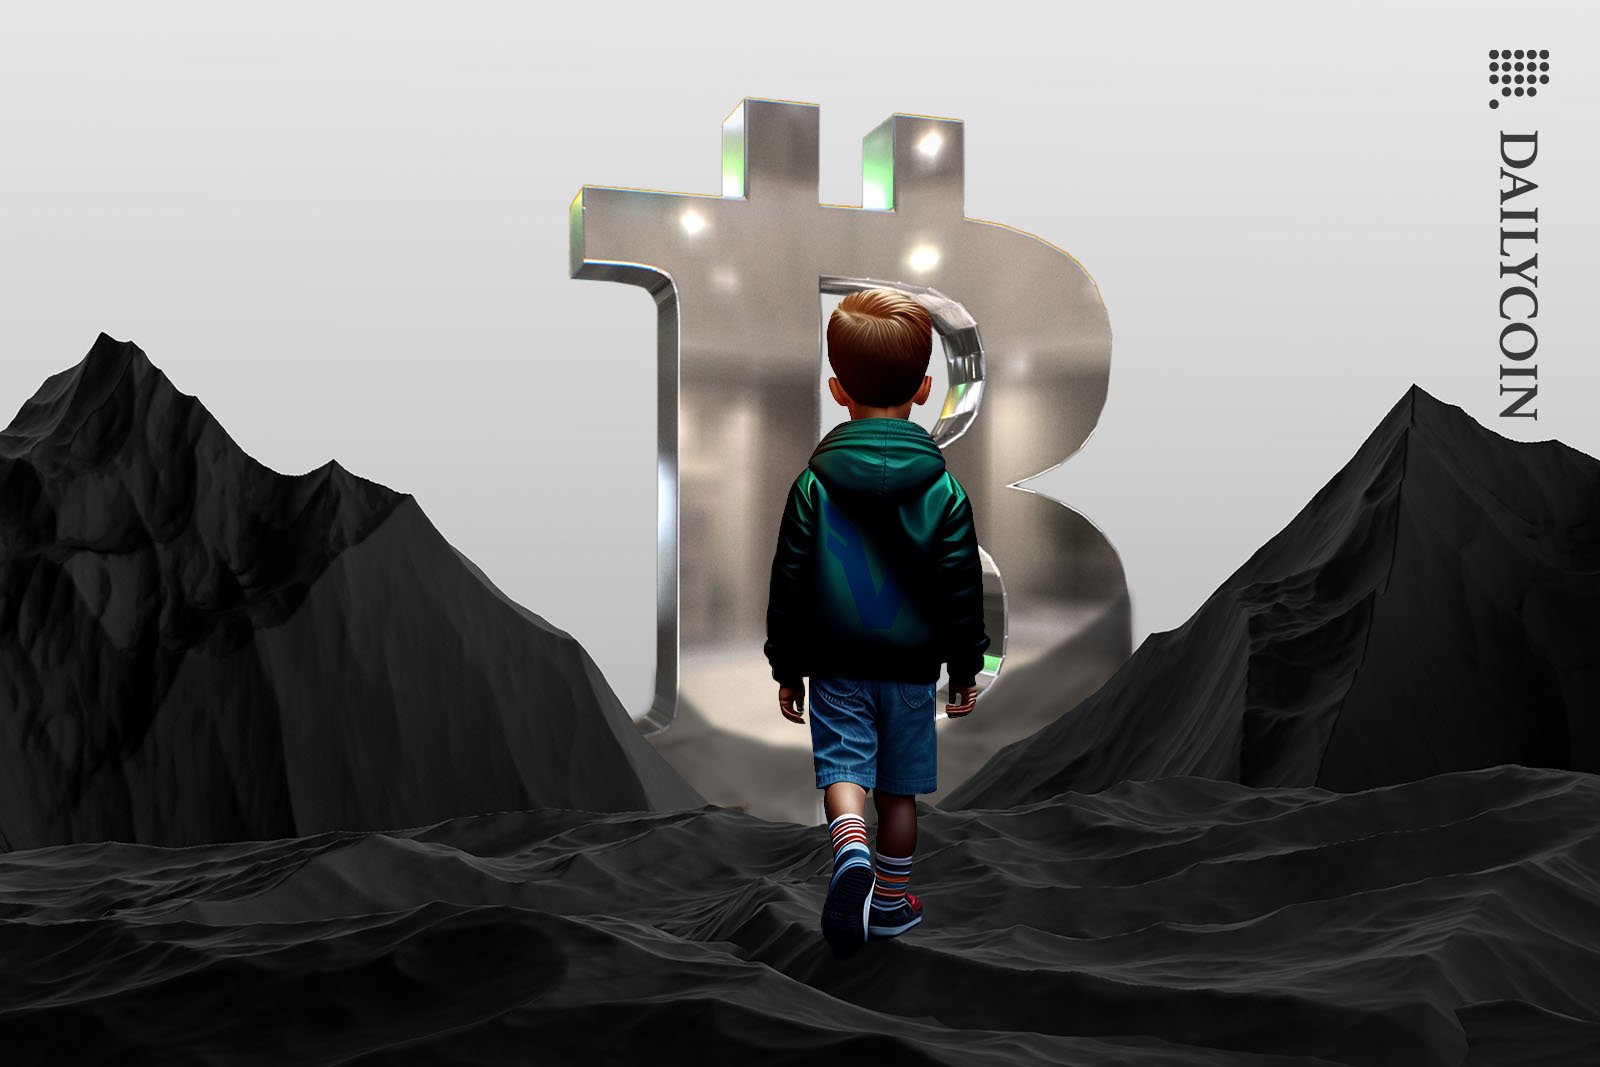 Boy walking towards Bitcoin sign over black rocky mountains.